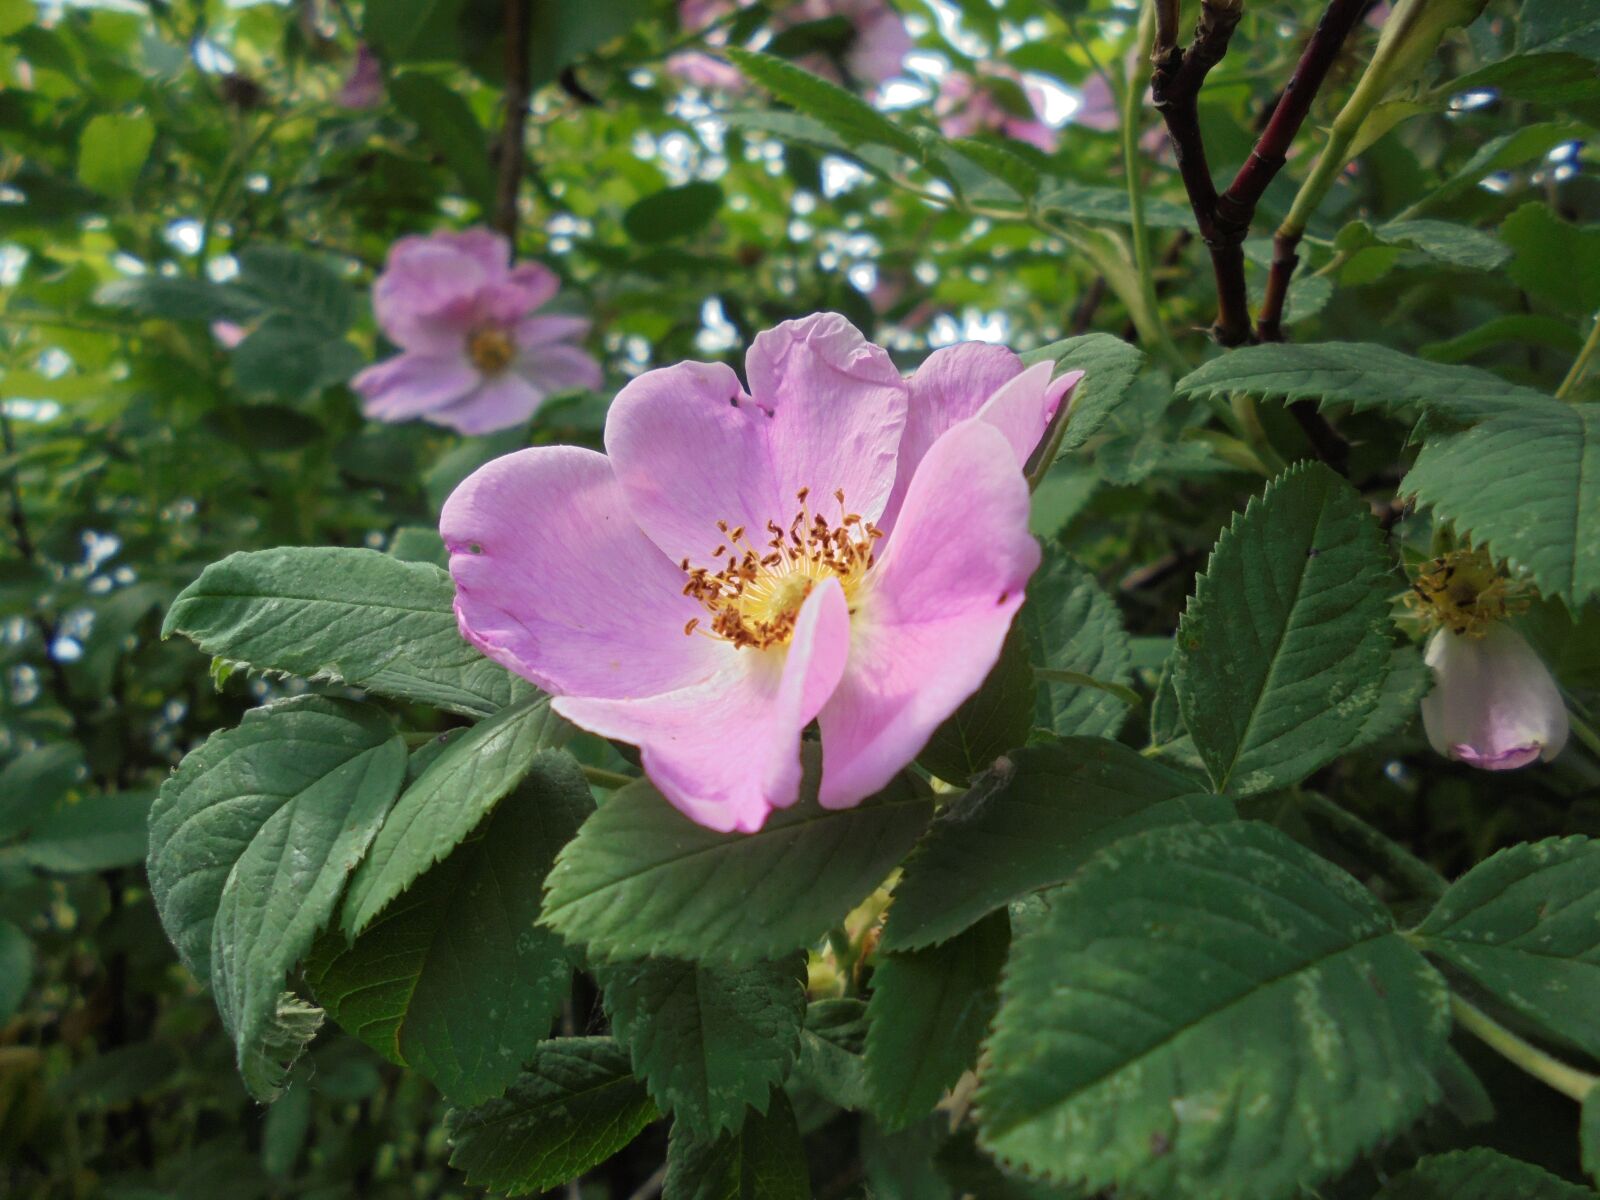 Sony Cyber-shot DSC-W810 sample photo. Macro, flower, bloom photography